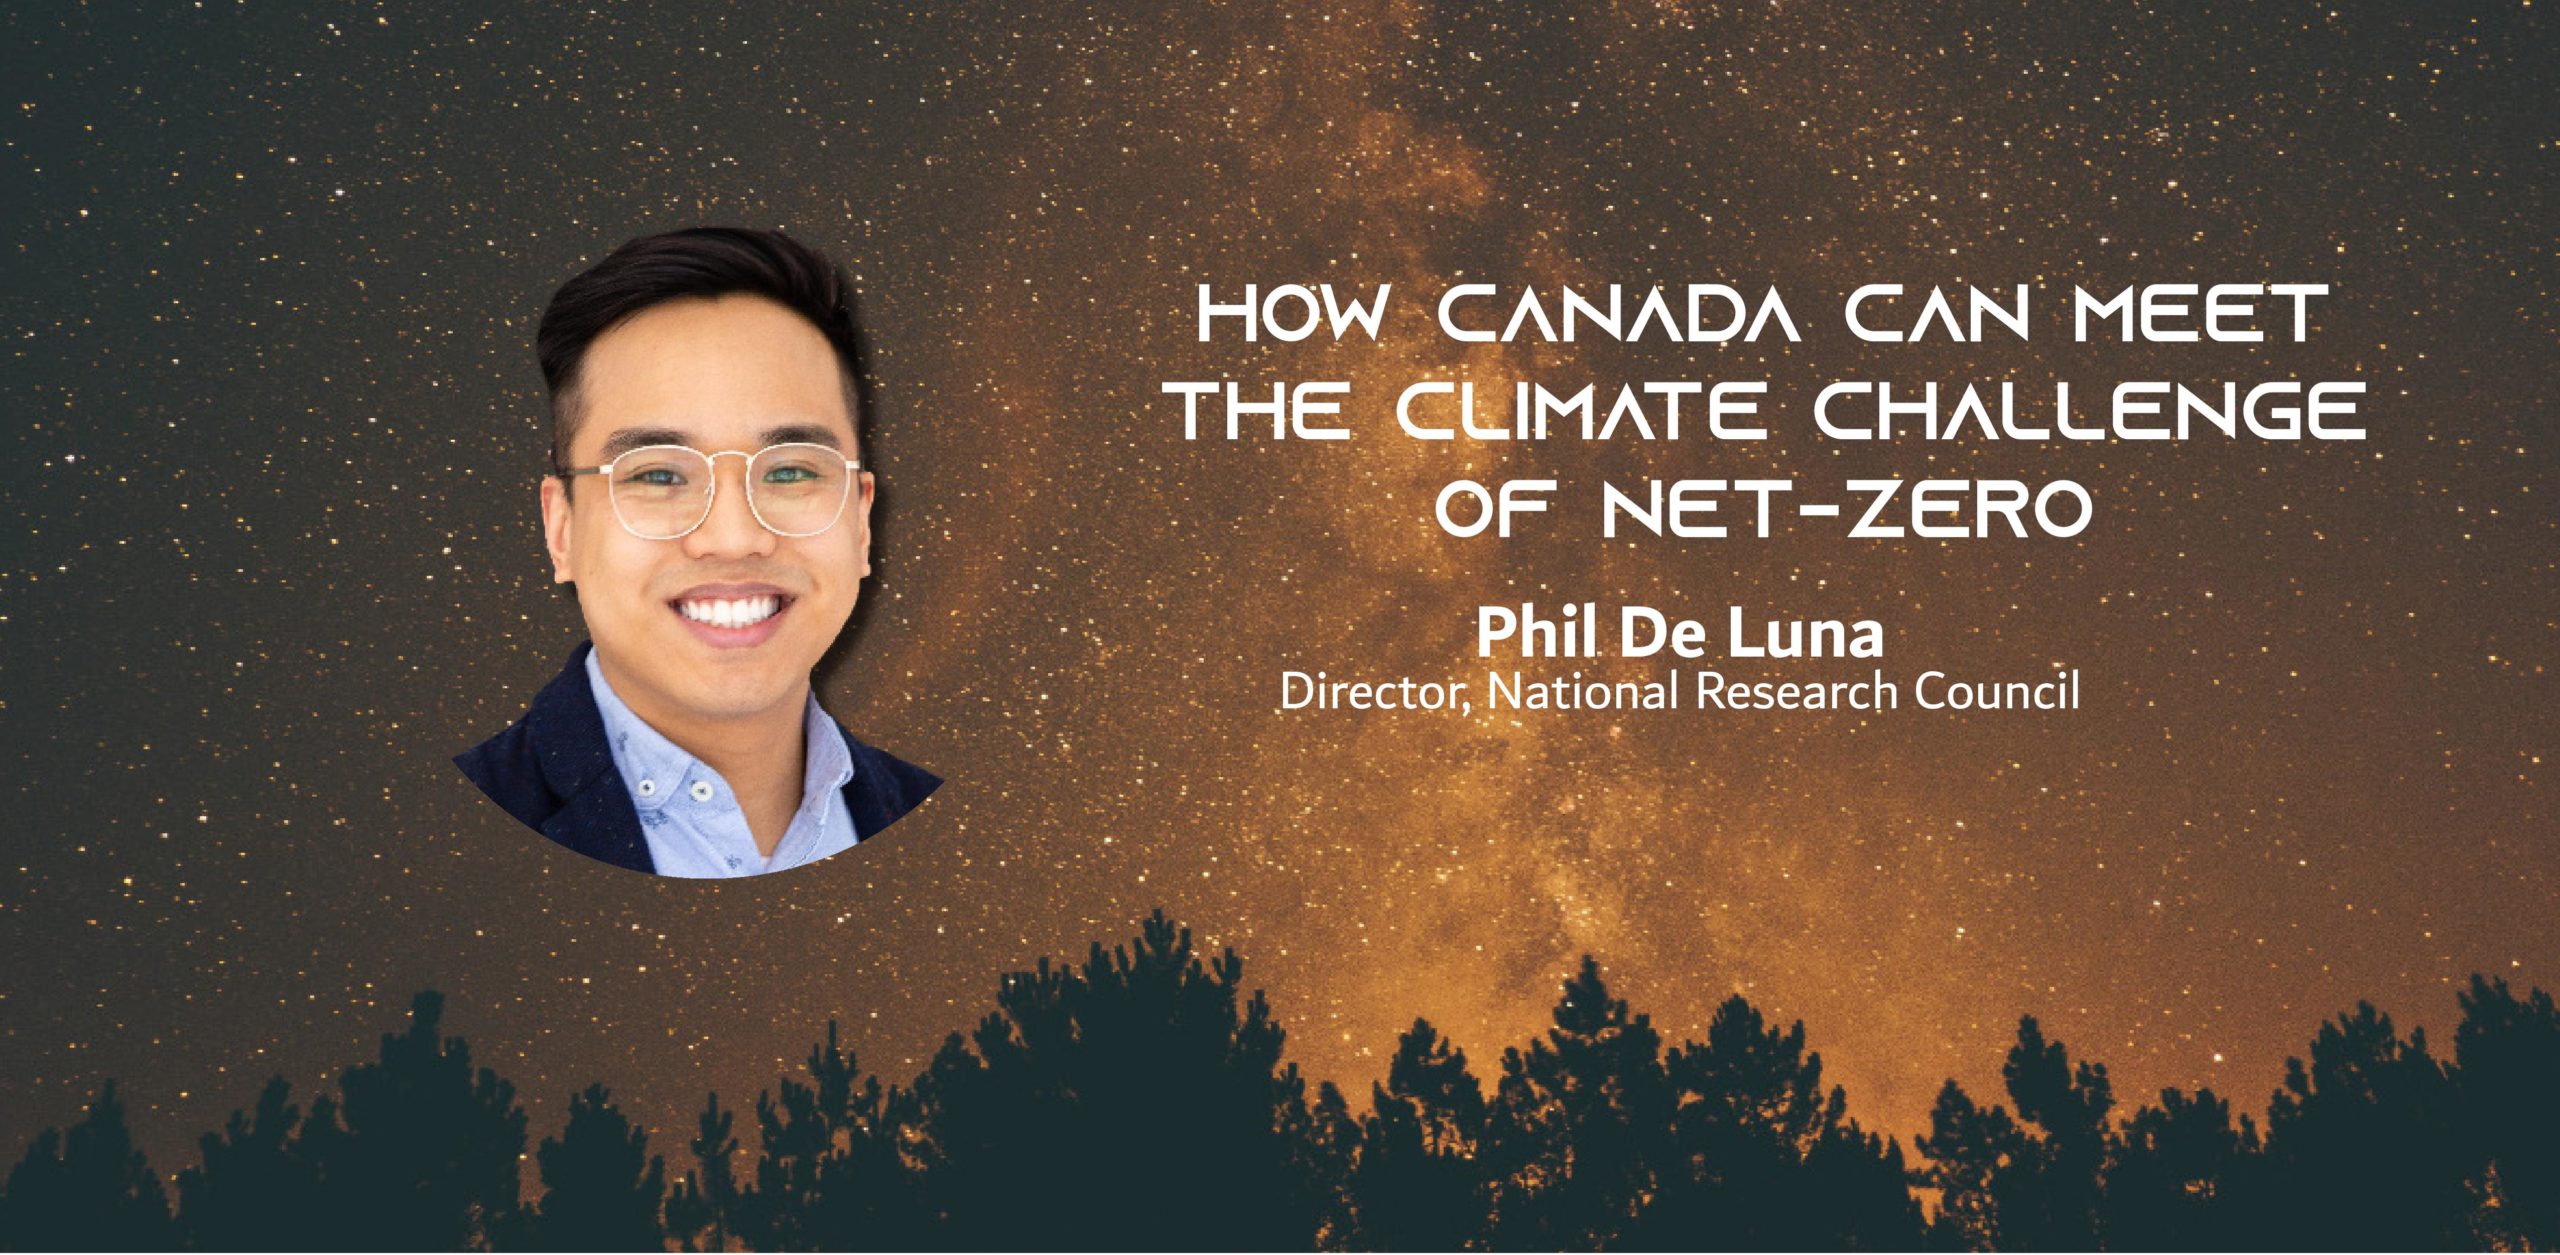 Photo d'un homme asiatique sur un ciel nocturne avec le texte : Comment le Canada peut relever le défi climatique de Net-Zero Phil De Luna Directeur, Conseil national de recherches